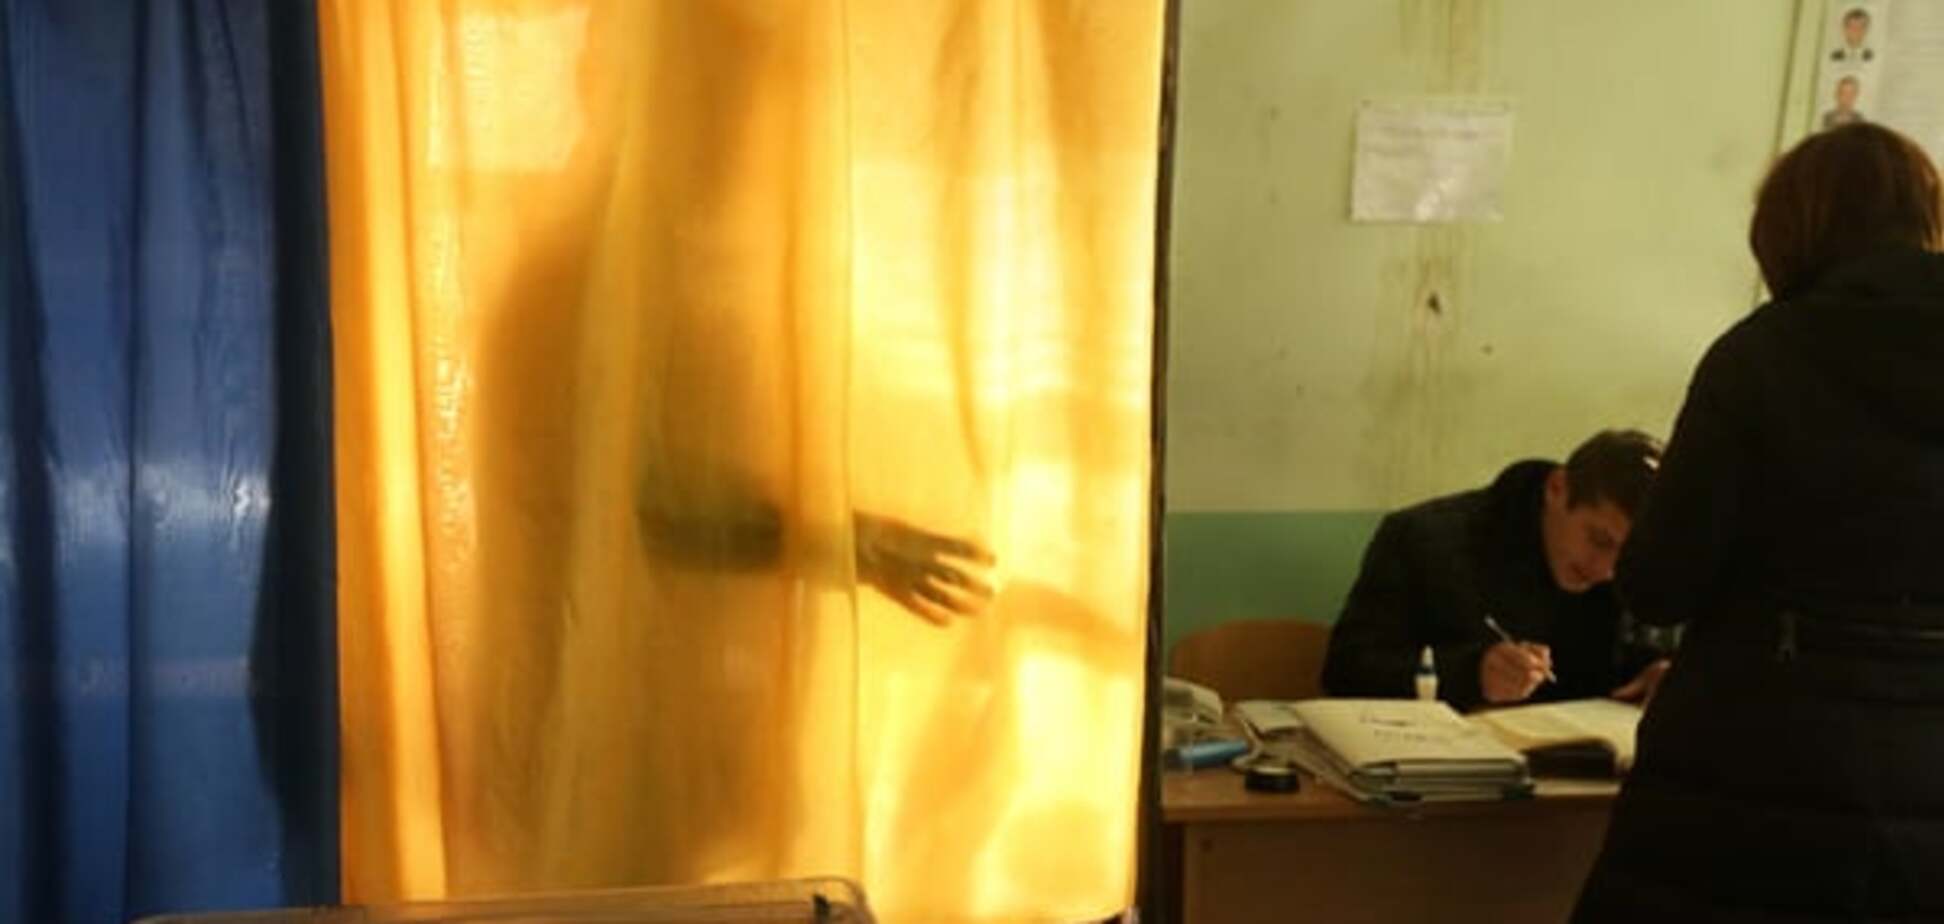 Українці готові голосувати за Порошенка і 'Опозиційний блок' - соцопитування